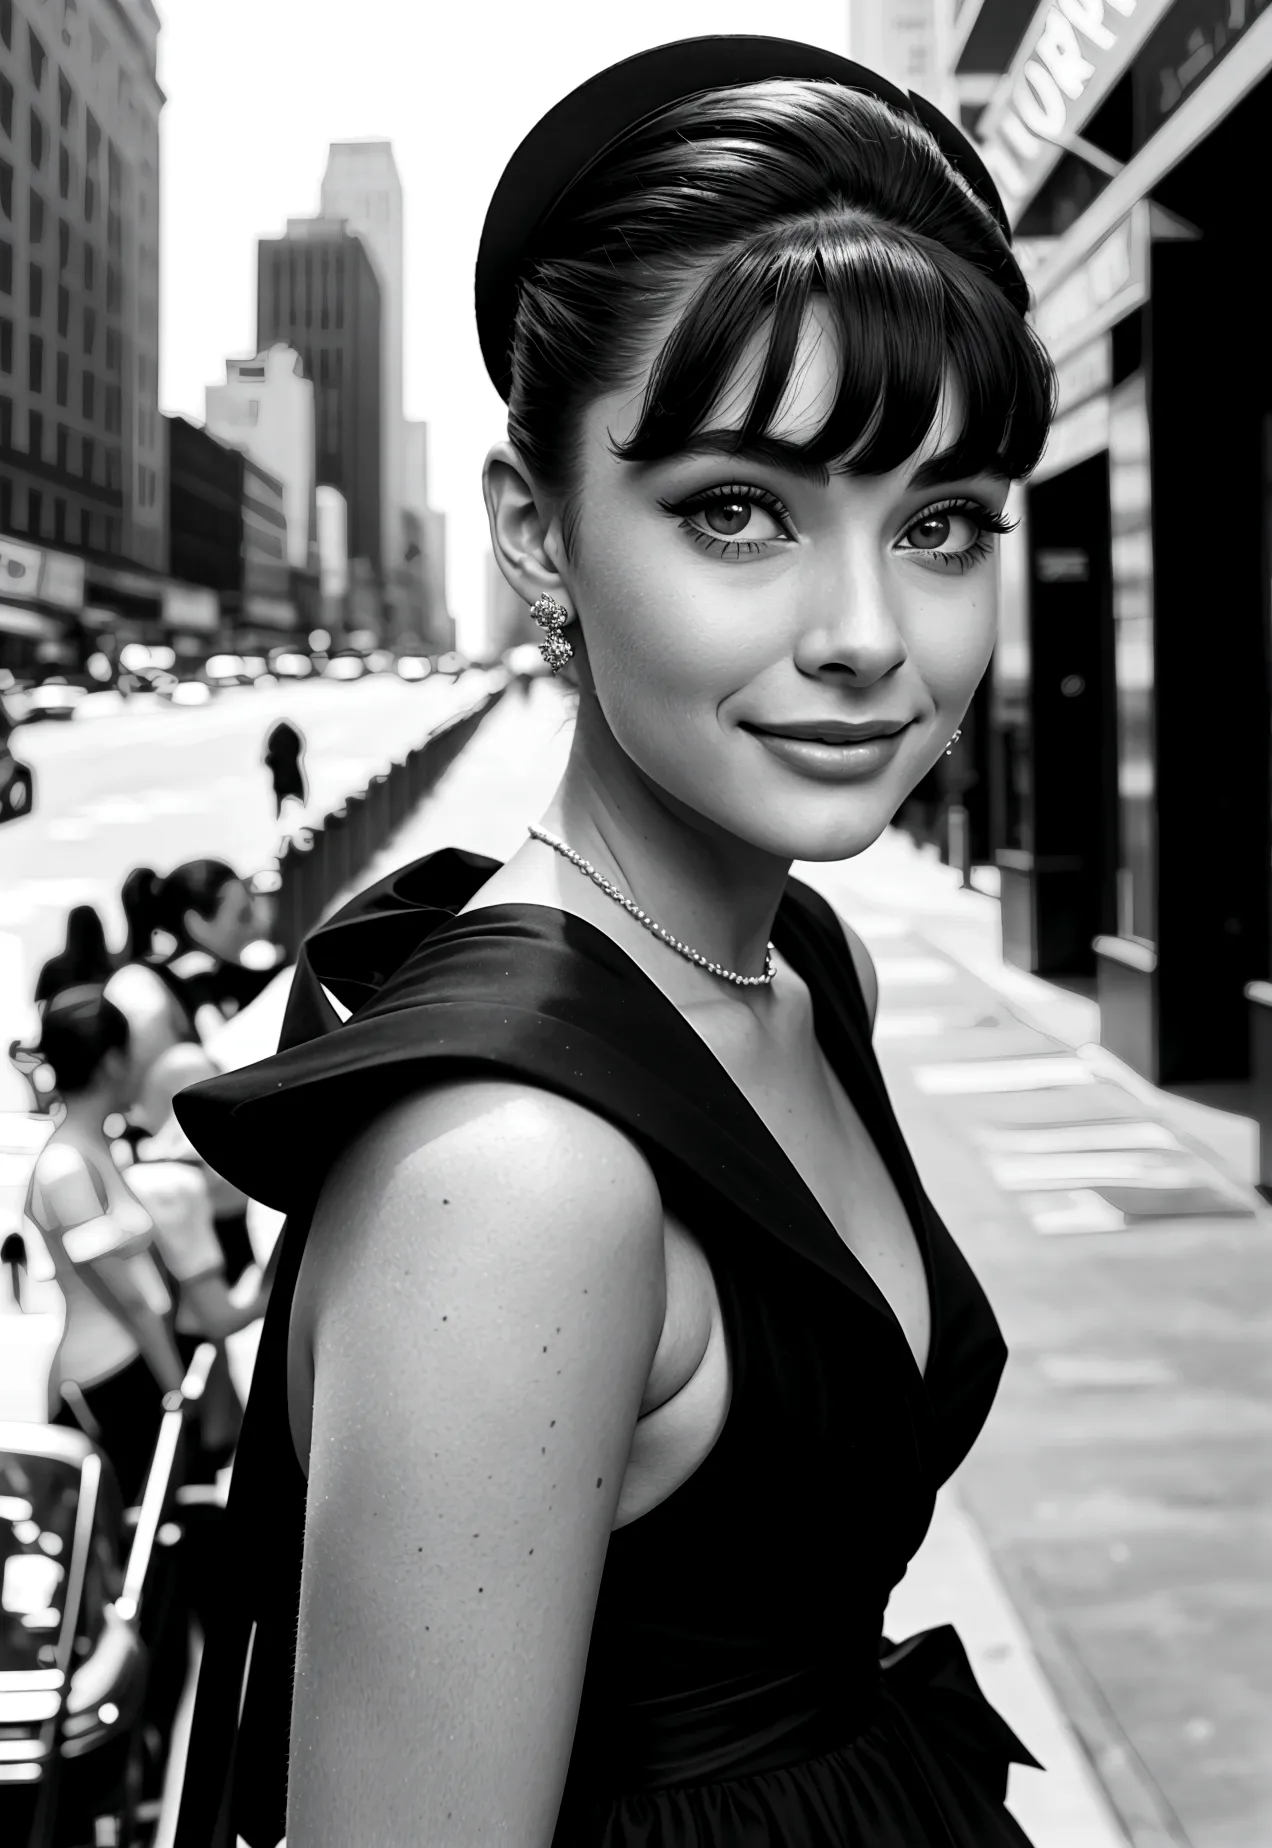 Photograph of a 20-year-old woman who looks like Audrey Hepburn: pelo corto y oscuro, ojos grandes y expresivos y una sonrisa el...